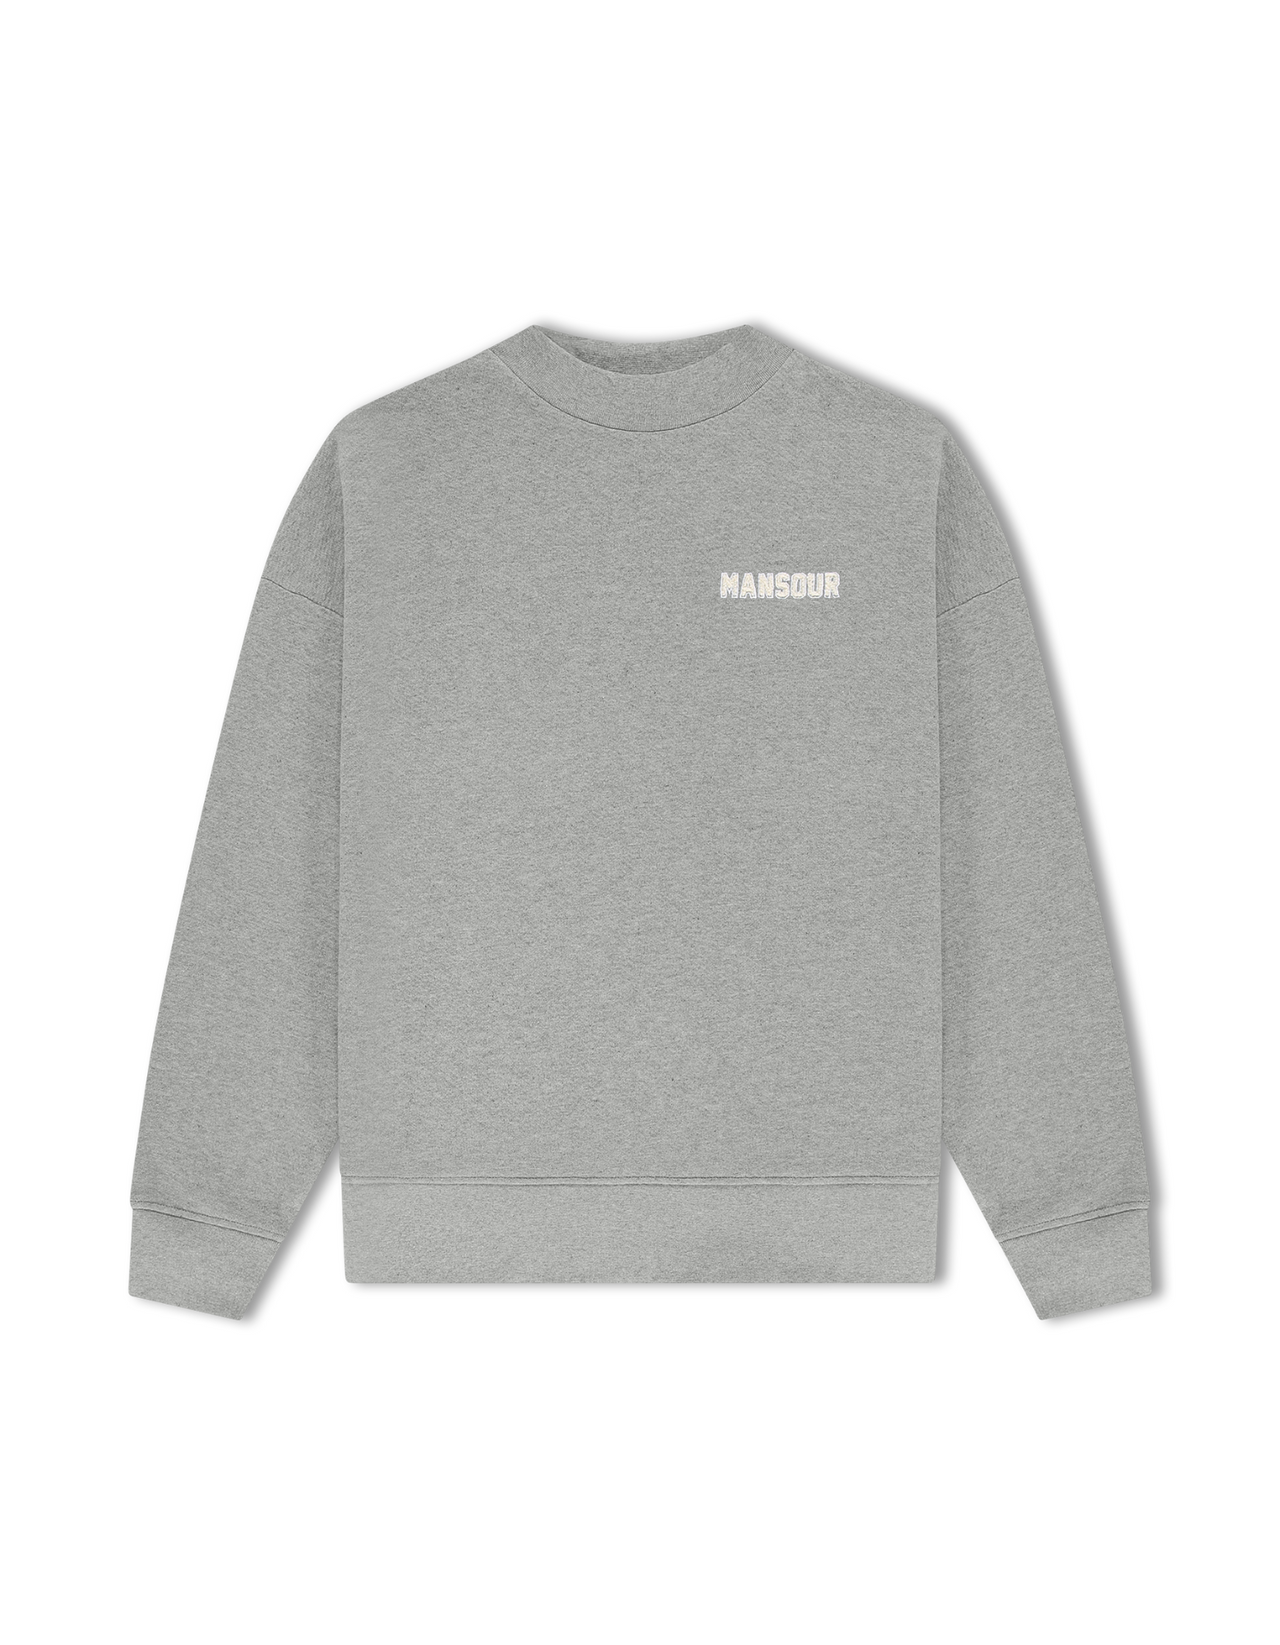 Paris College sweater grey